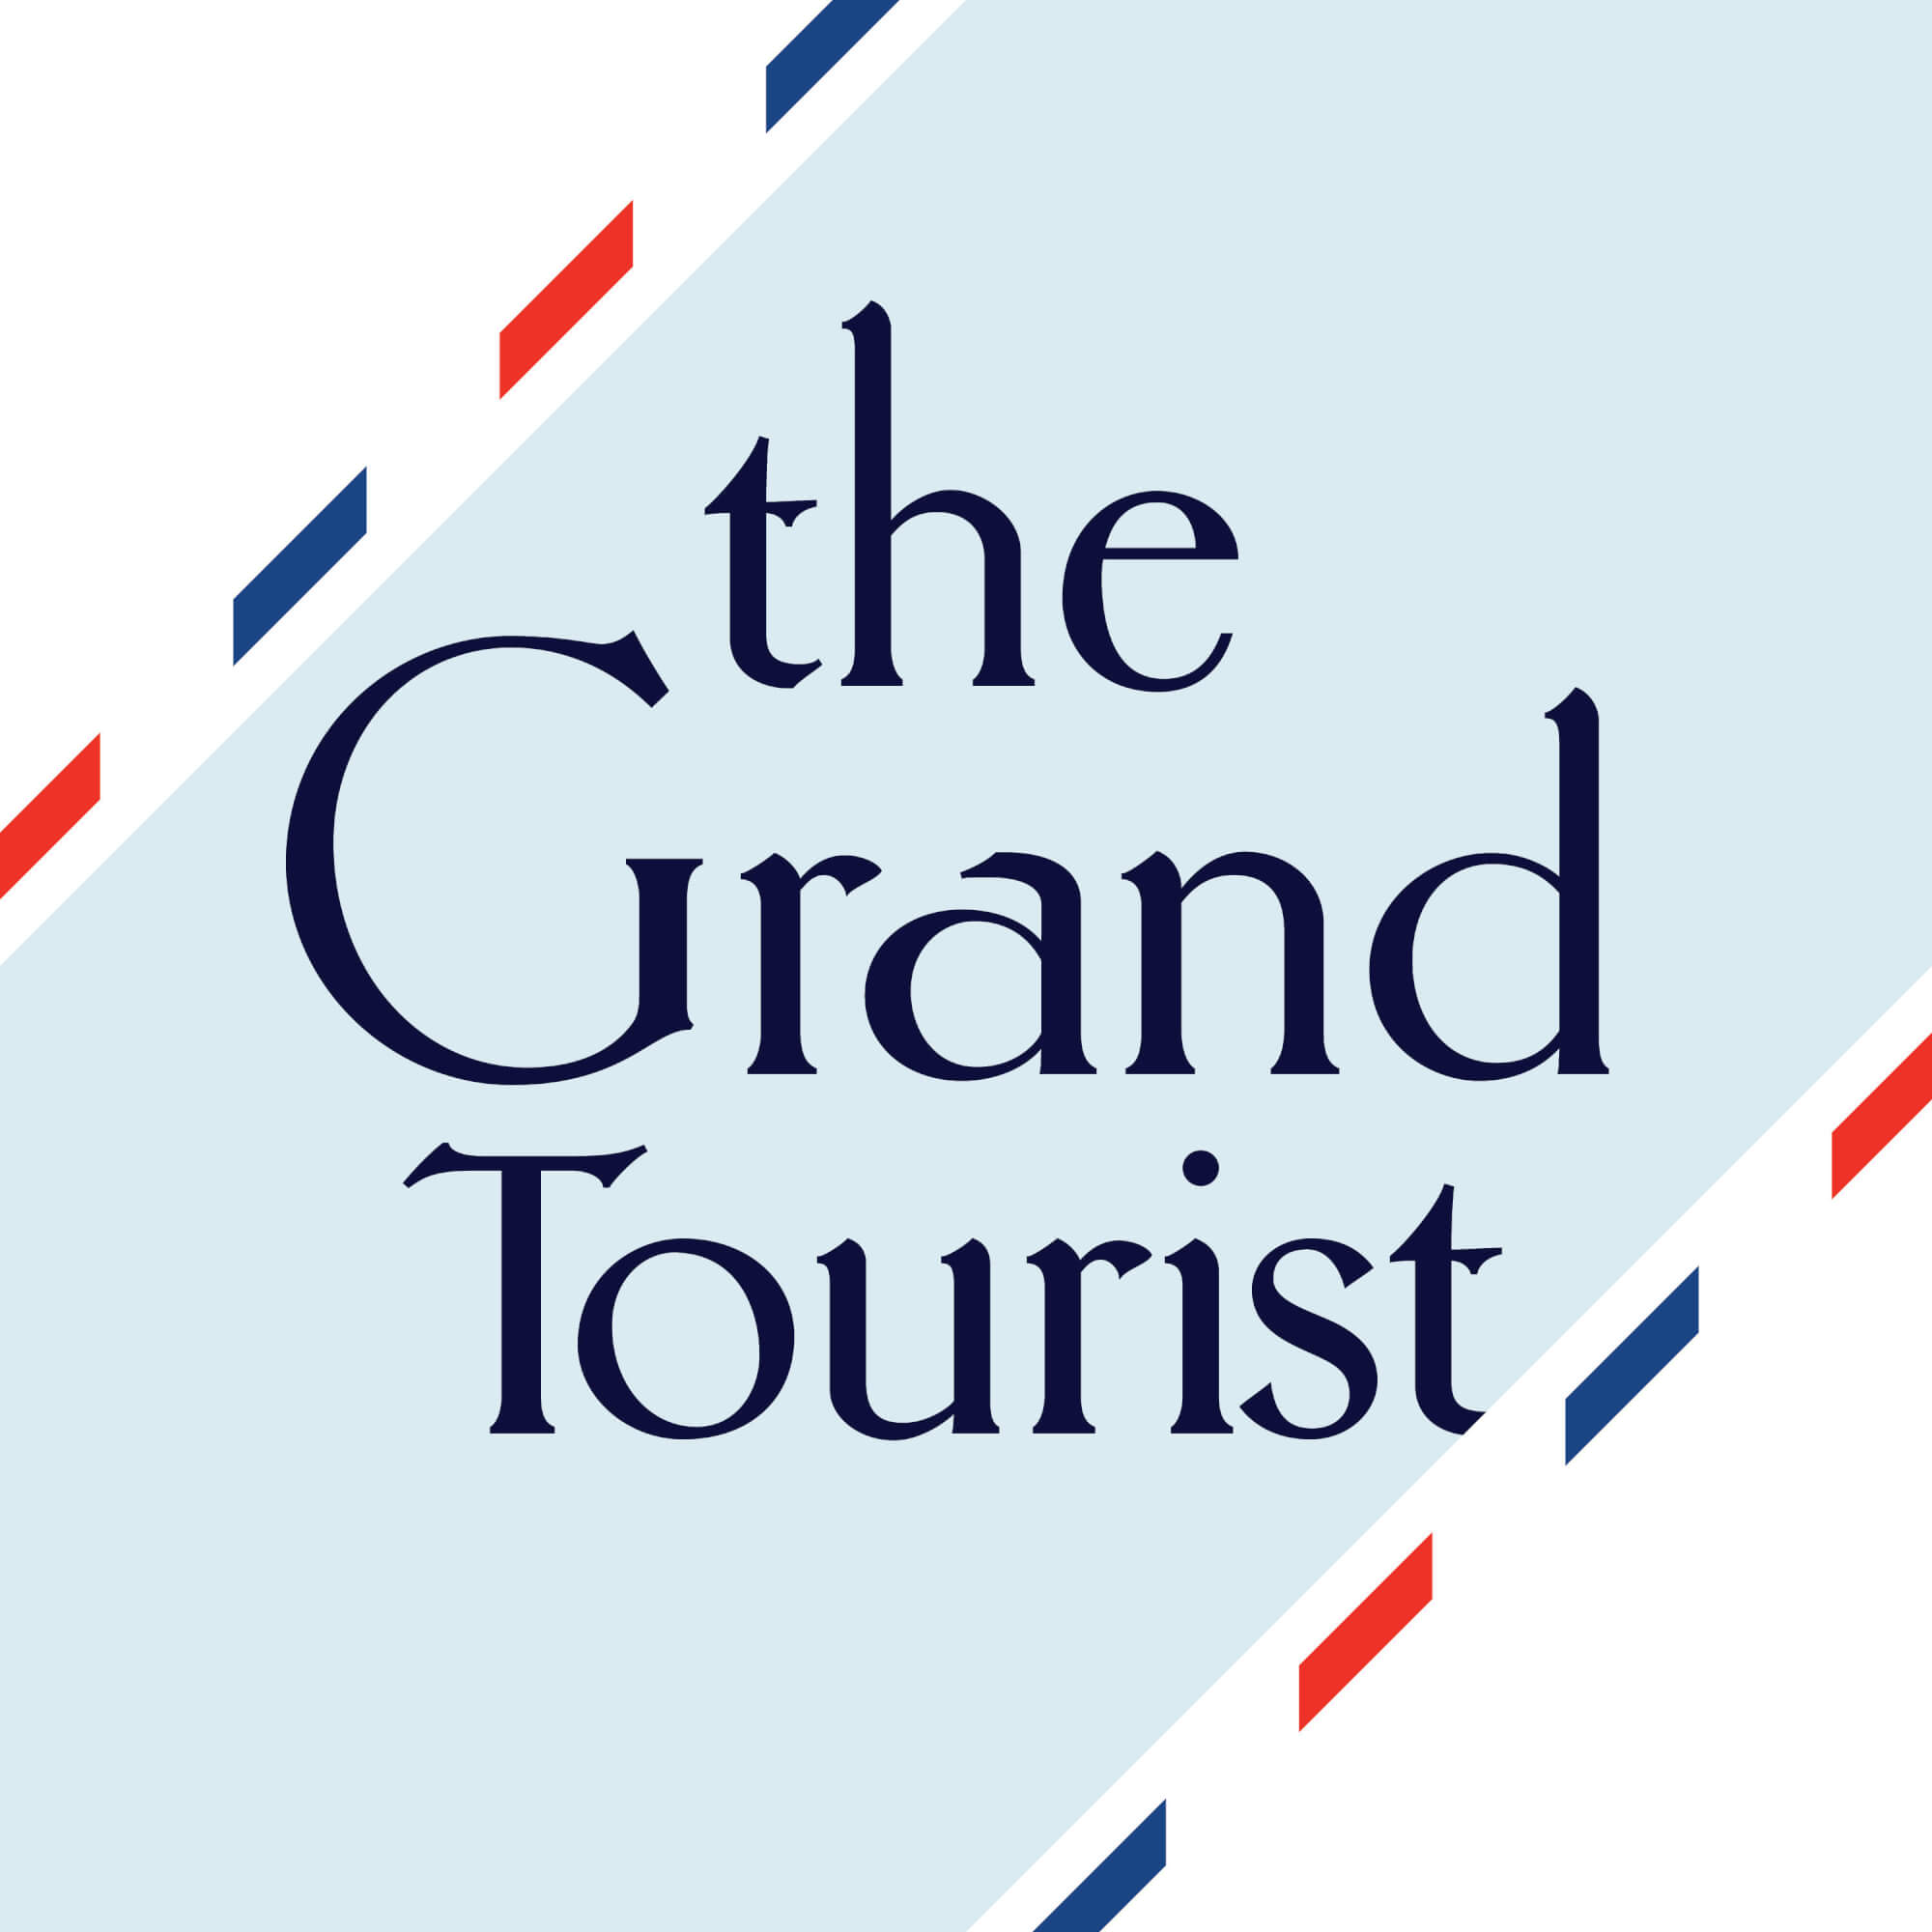 PHILIPPE STARCK RÉPOND AUX QUESTIONS DE THE GRAND TOURIST 